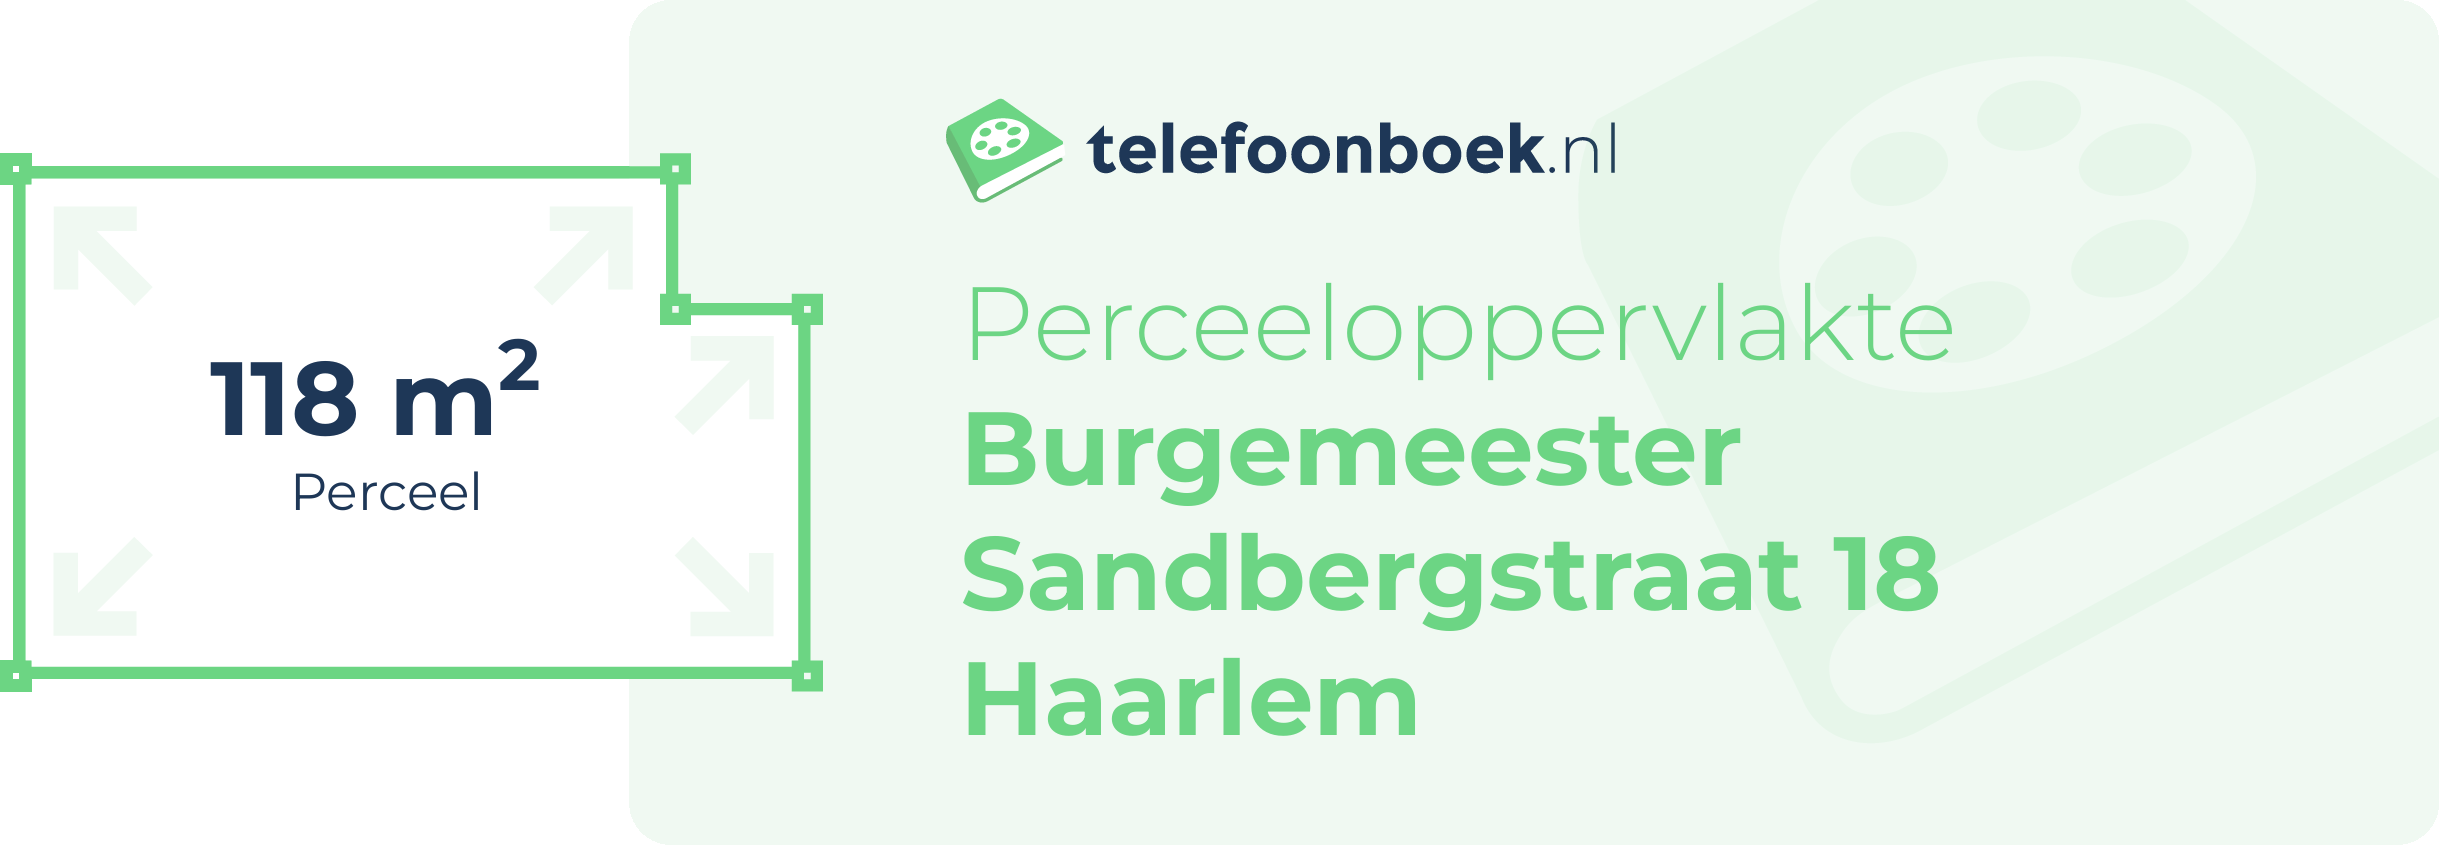 Perceeloppervlakte Burgemeester Sandbergstraat 18 Haarlem